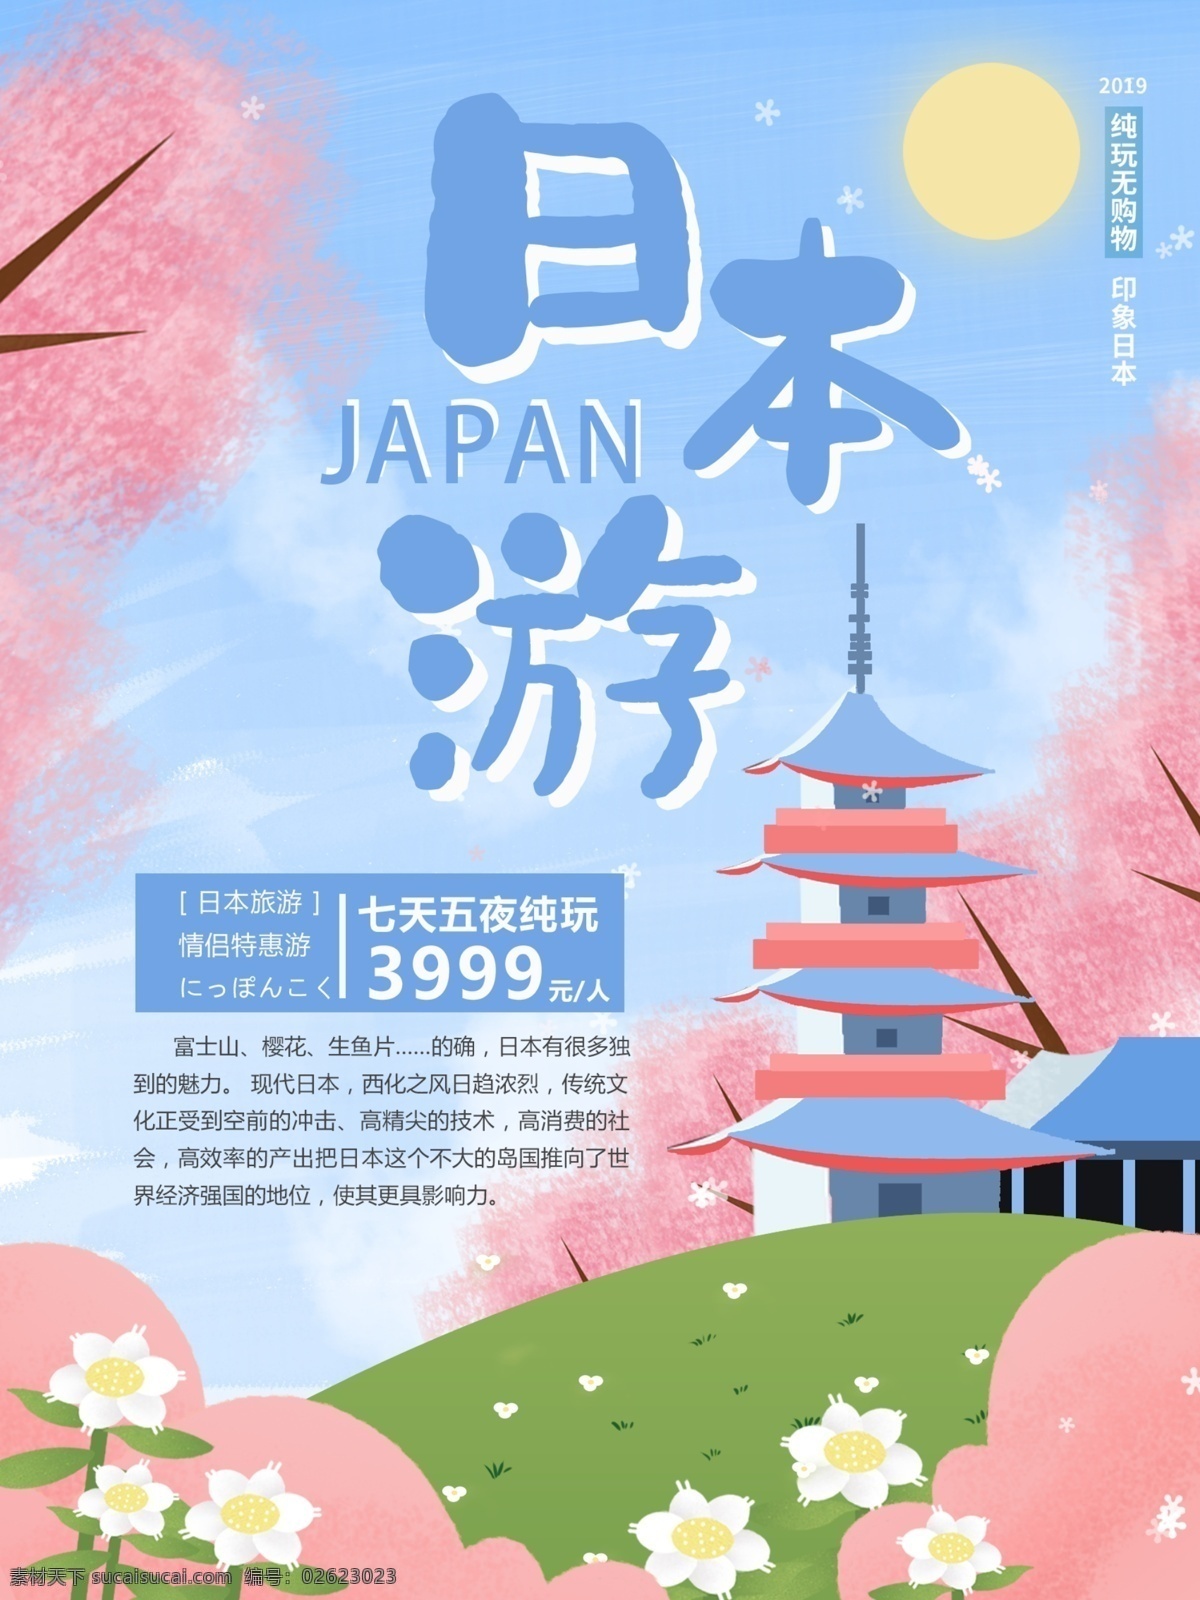 蓝色 清新 原创 手绘 风格 日本旅游 海报 旅游 风景 美女 日本 富士山 塔